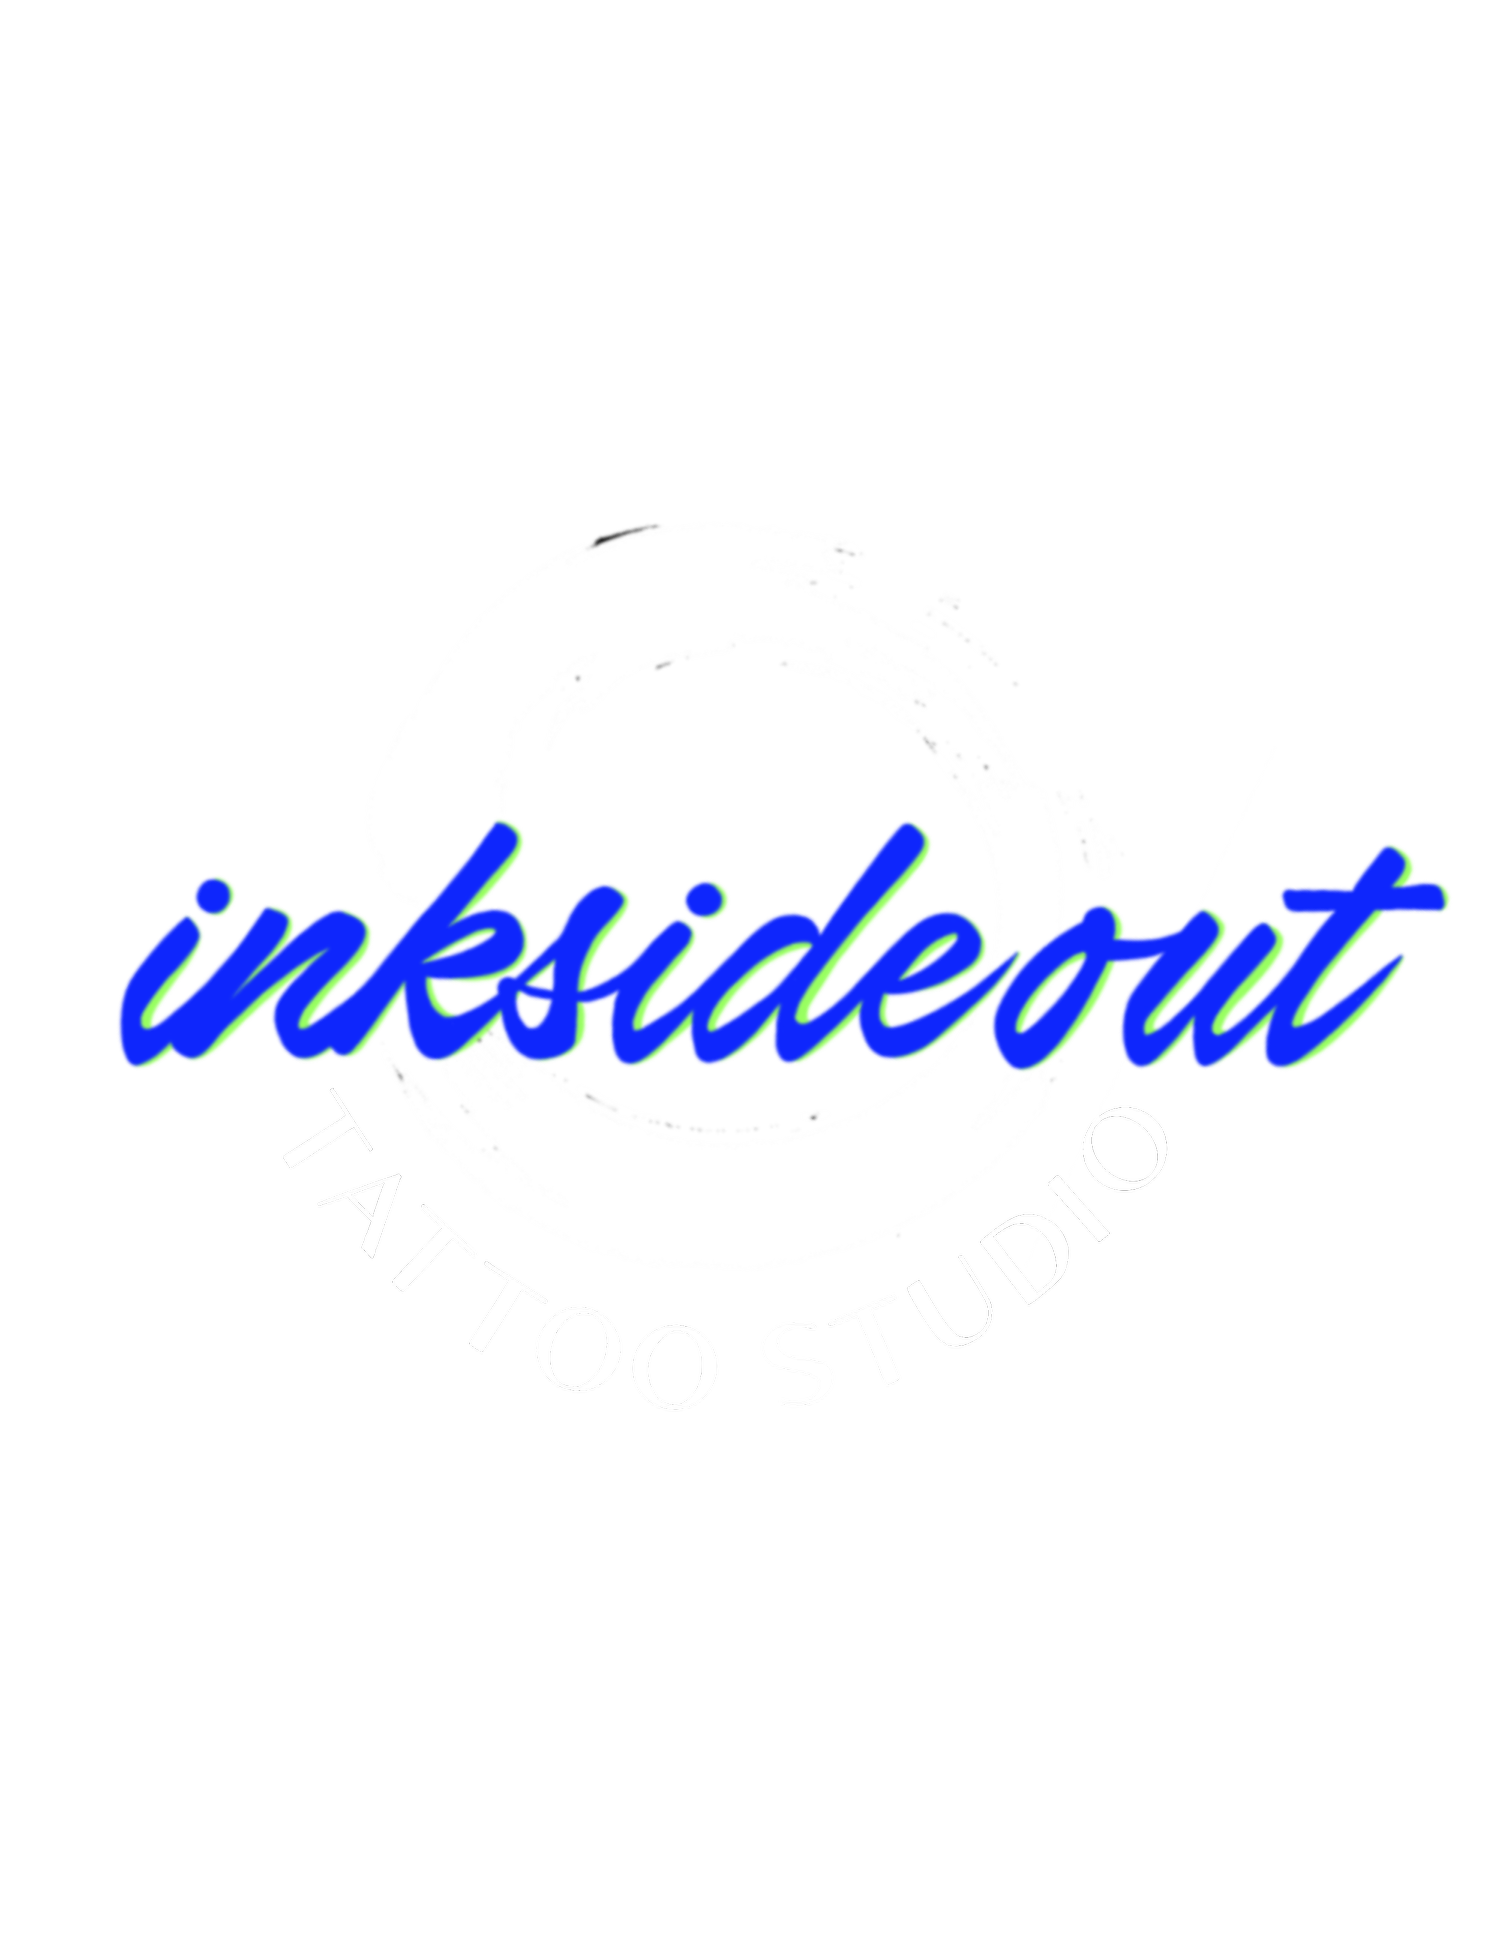 InkSideOut Tattoo Studio